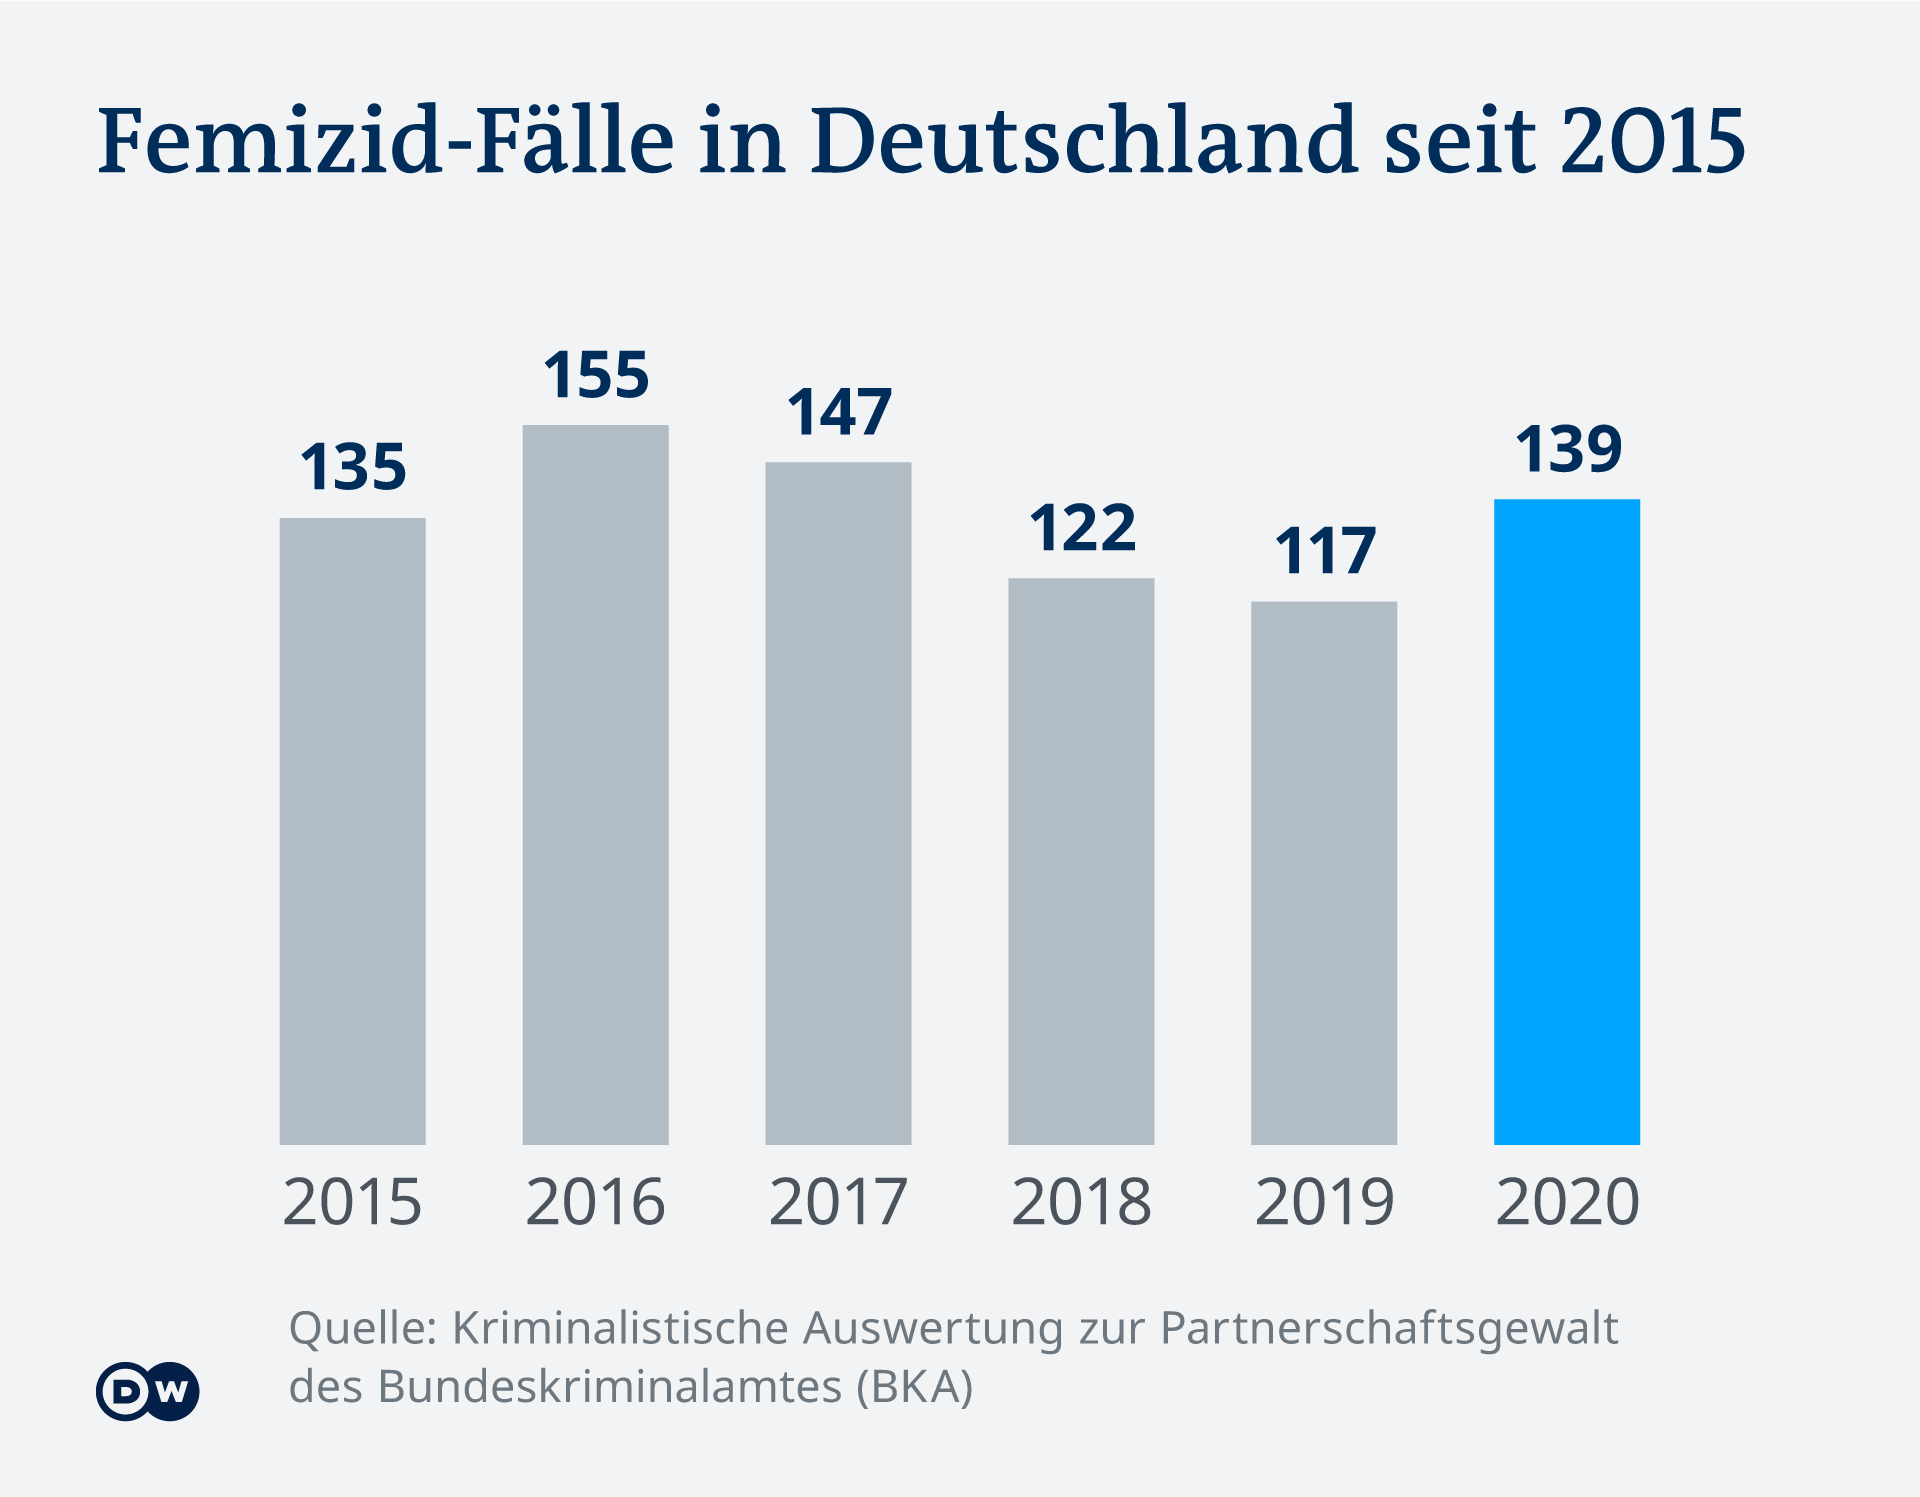  Numri i grave të vrara nga parnteri intim në Gjermani prej vitit 2015